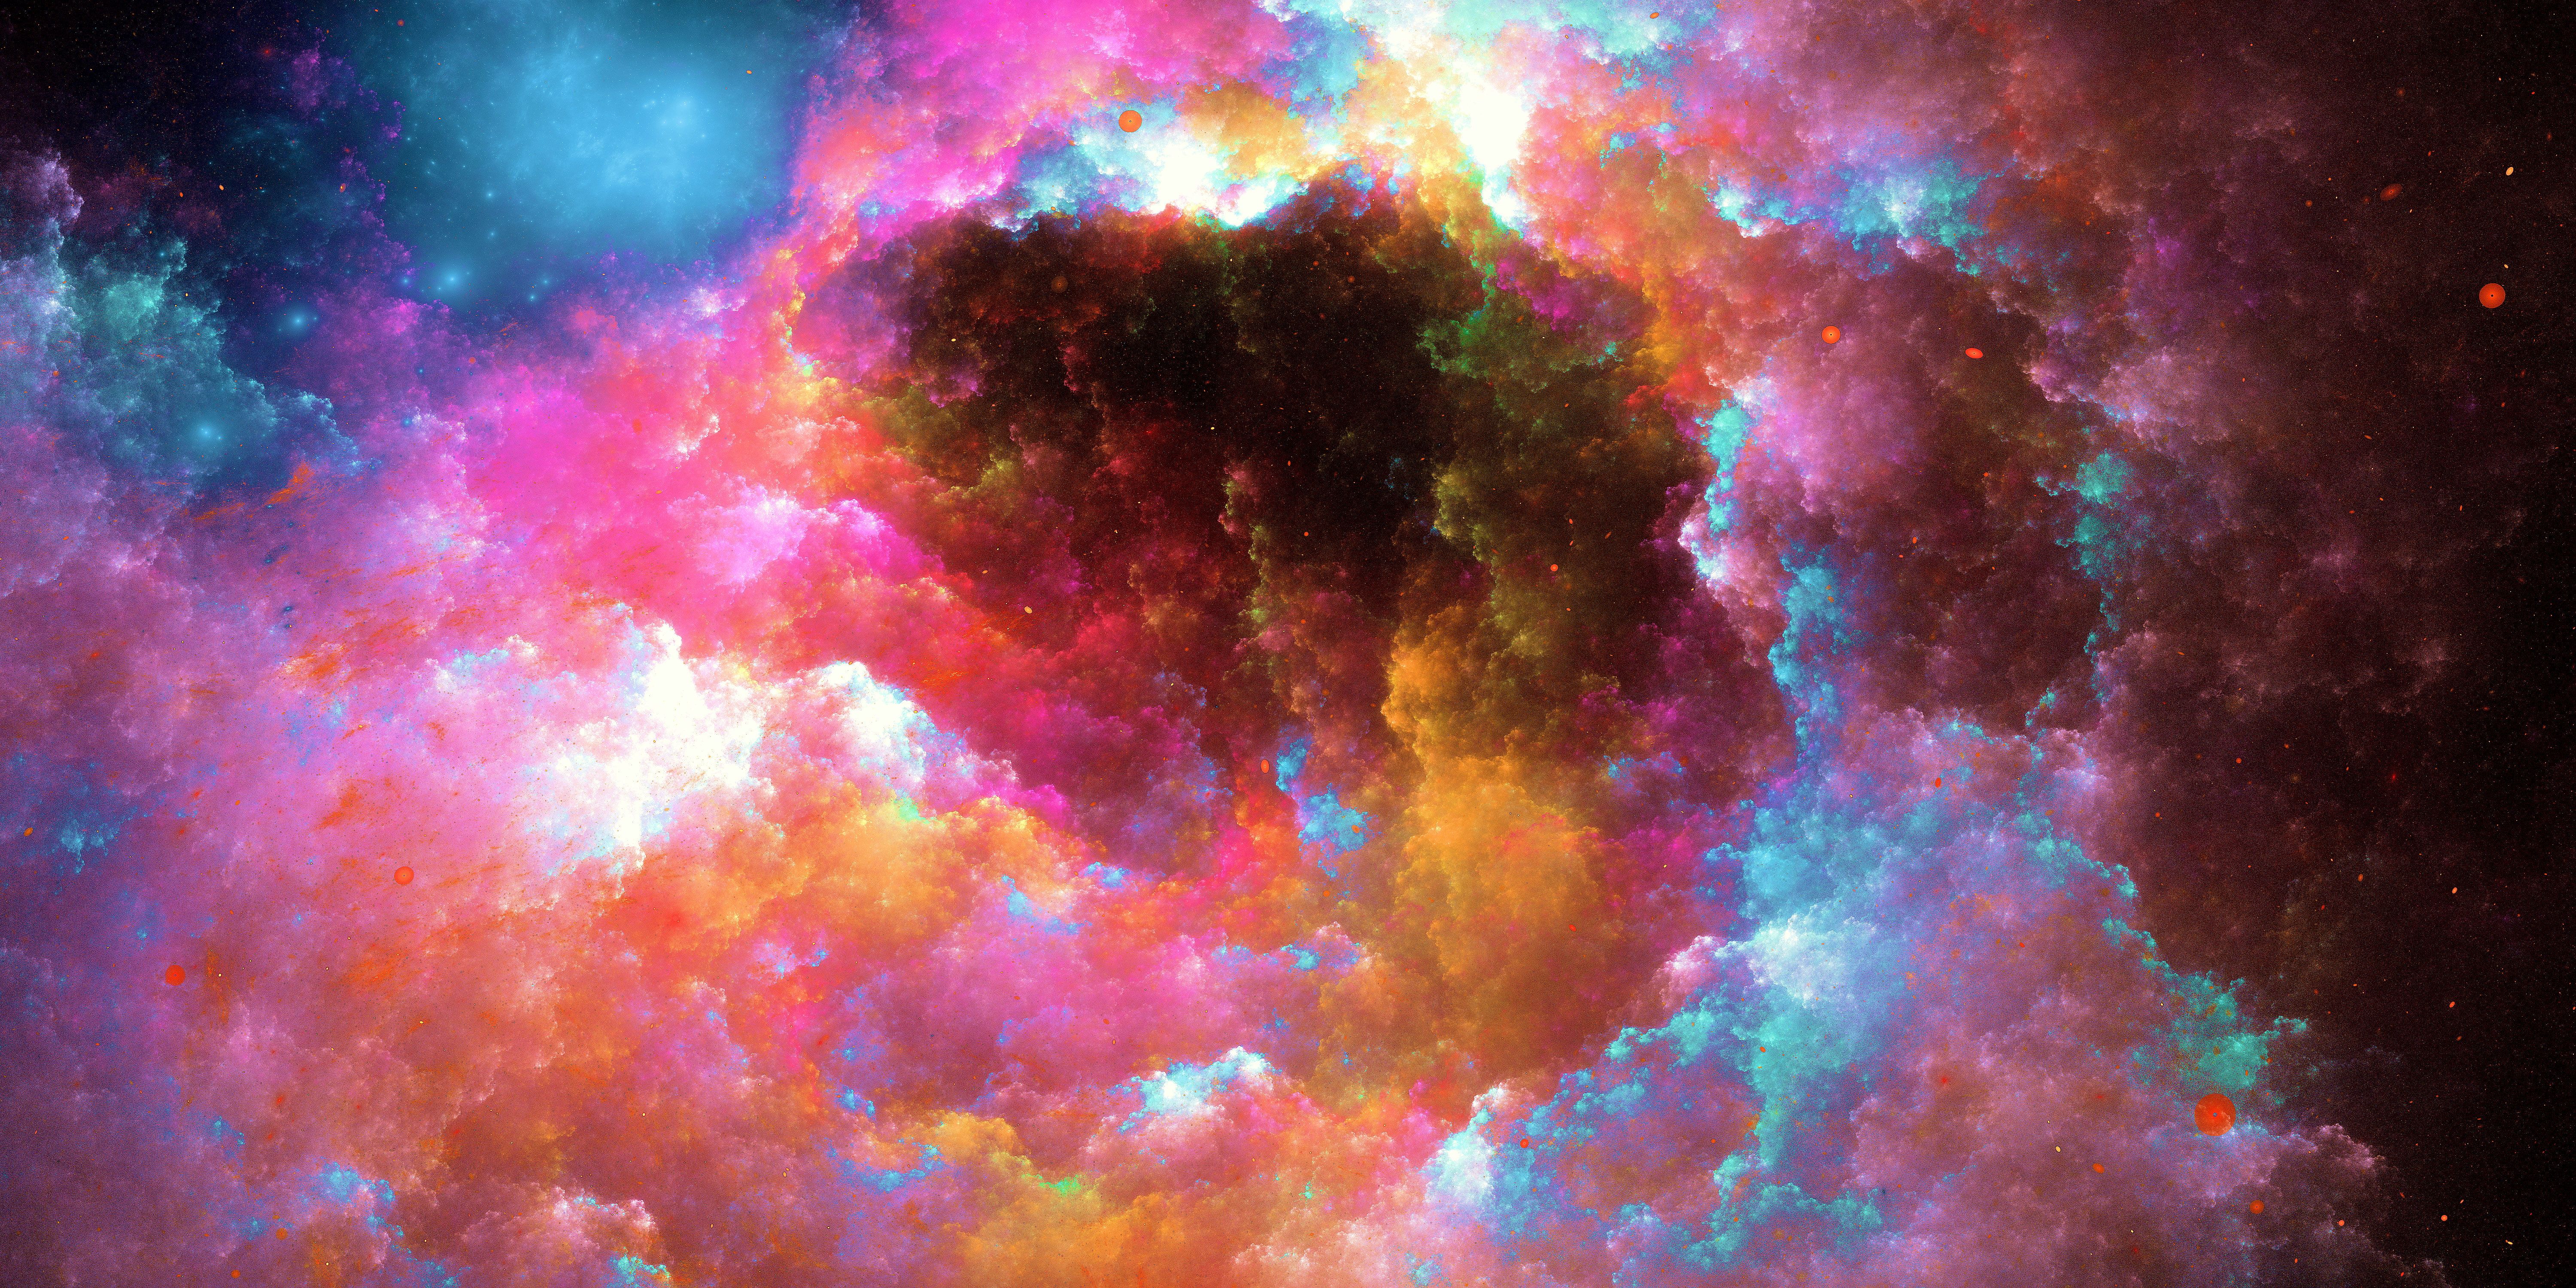 HD wallpaper: nebula, colorful, digital universe, hd, 4k, 5k,. Nebula wallpaper, Abstract wallpaper, Waves wallpaper